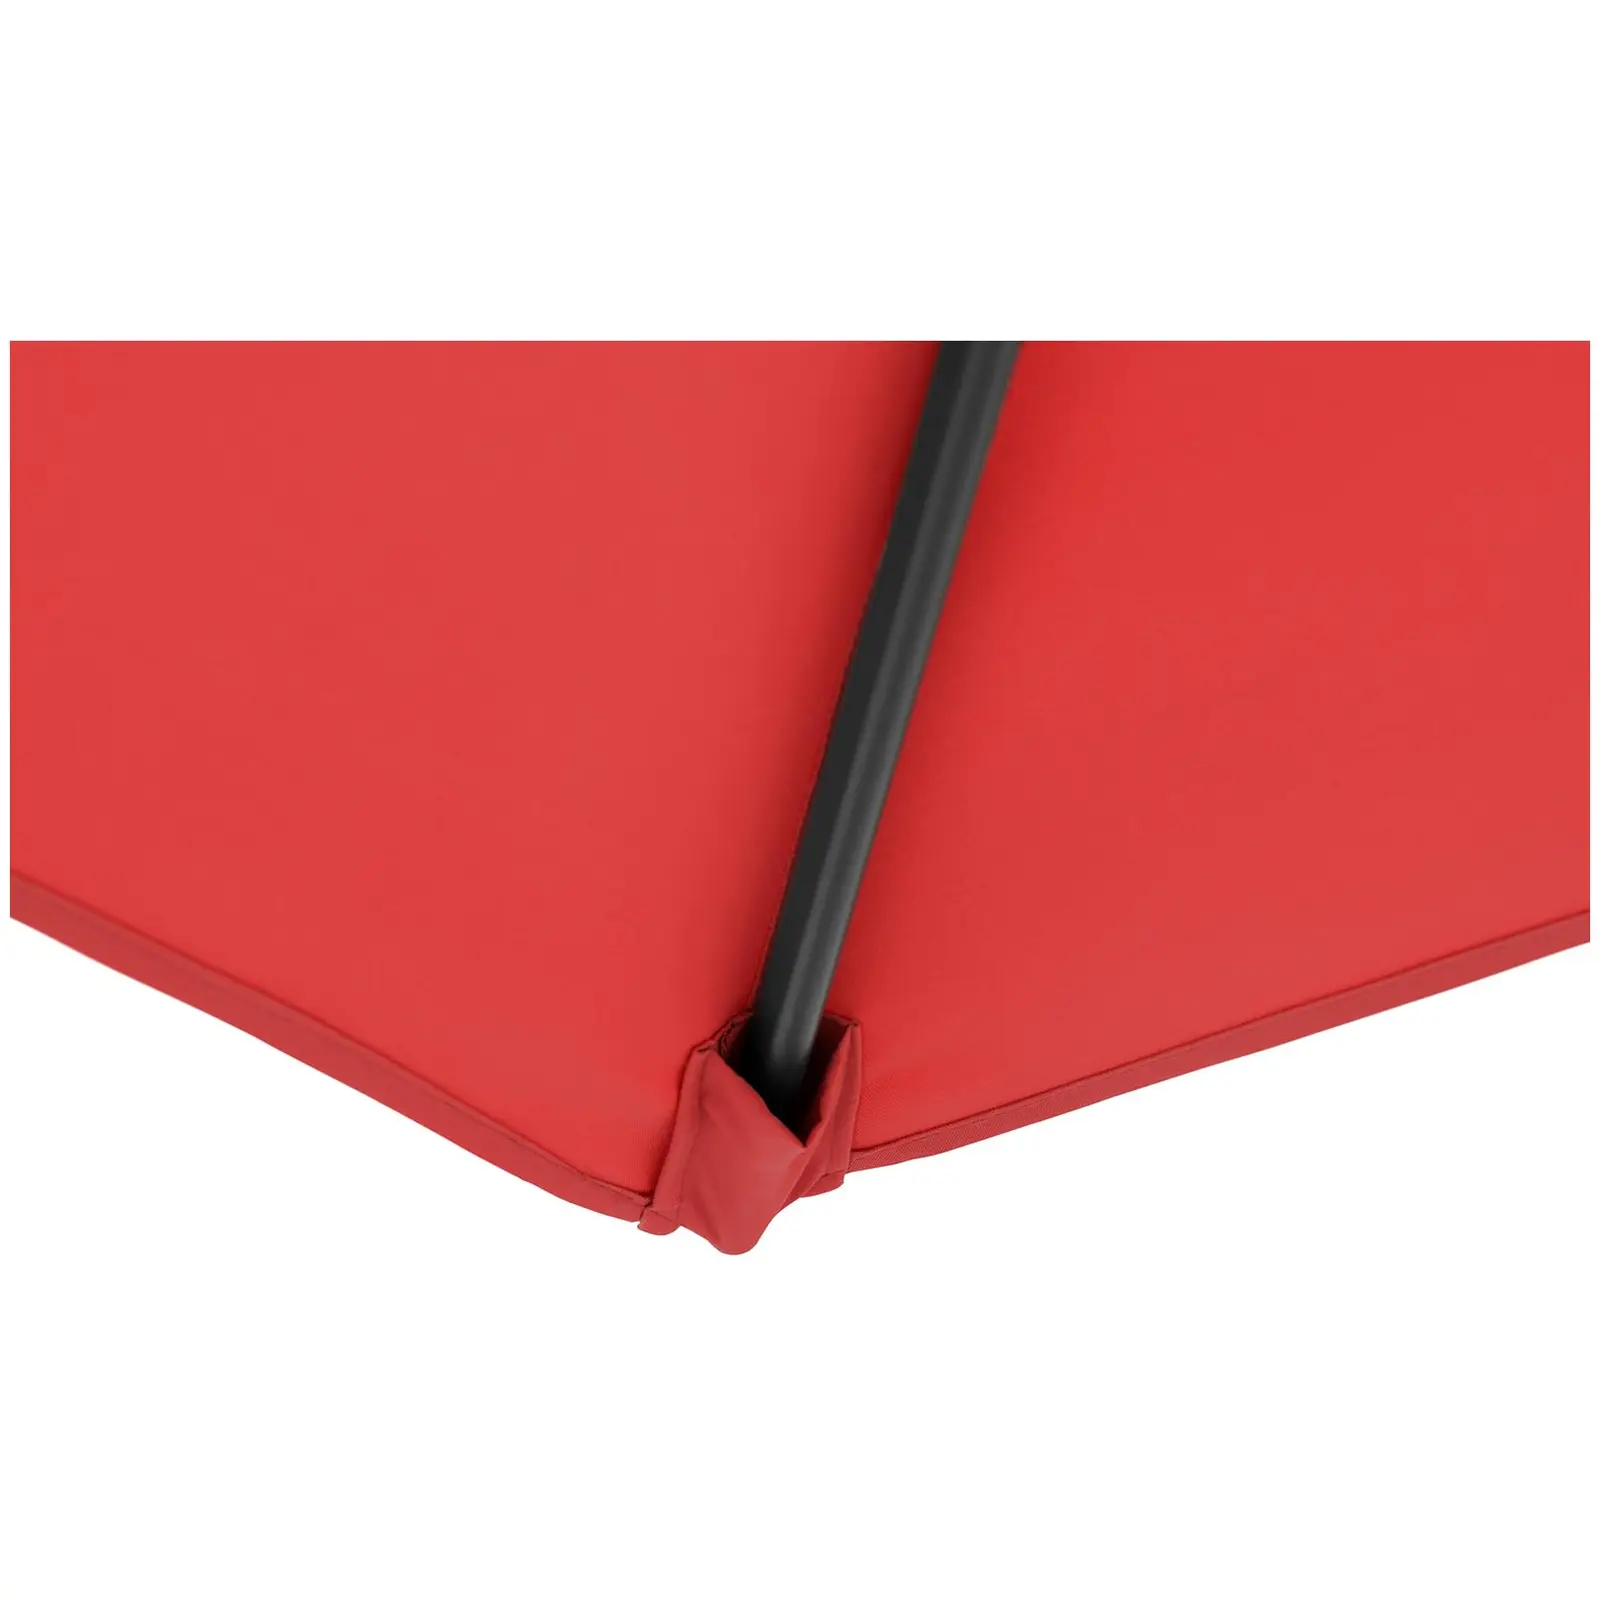 Trädgårdsparasoll - rött - fyrkantigt - 250 x 250 cm - kan lutas